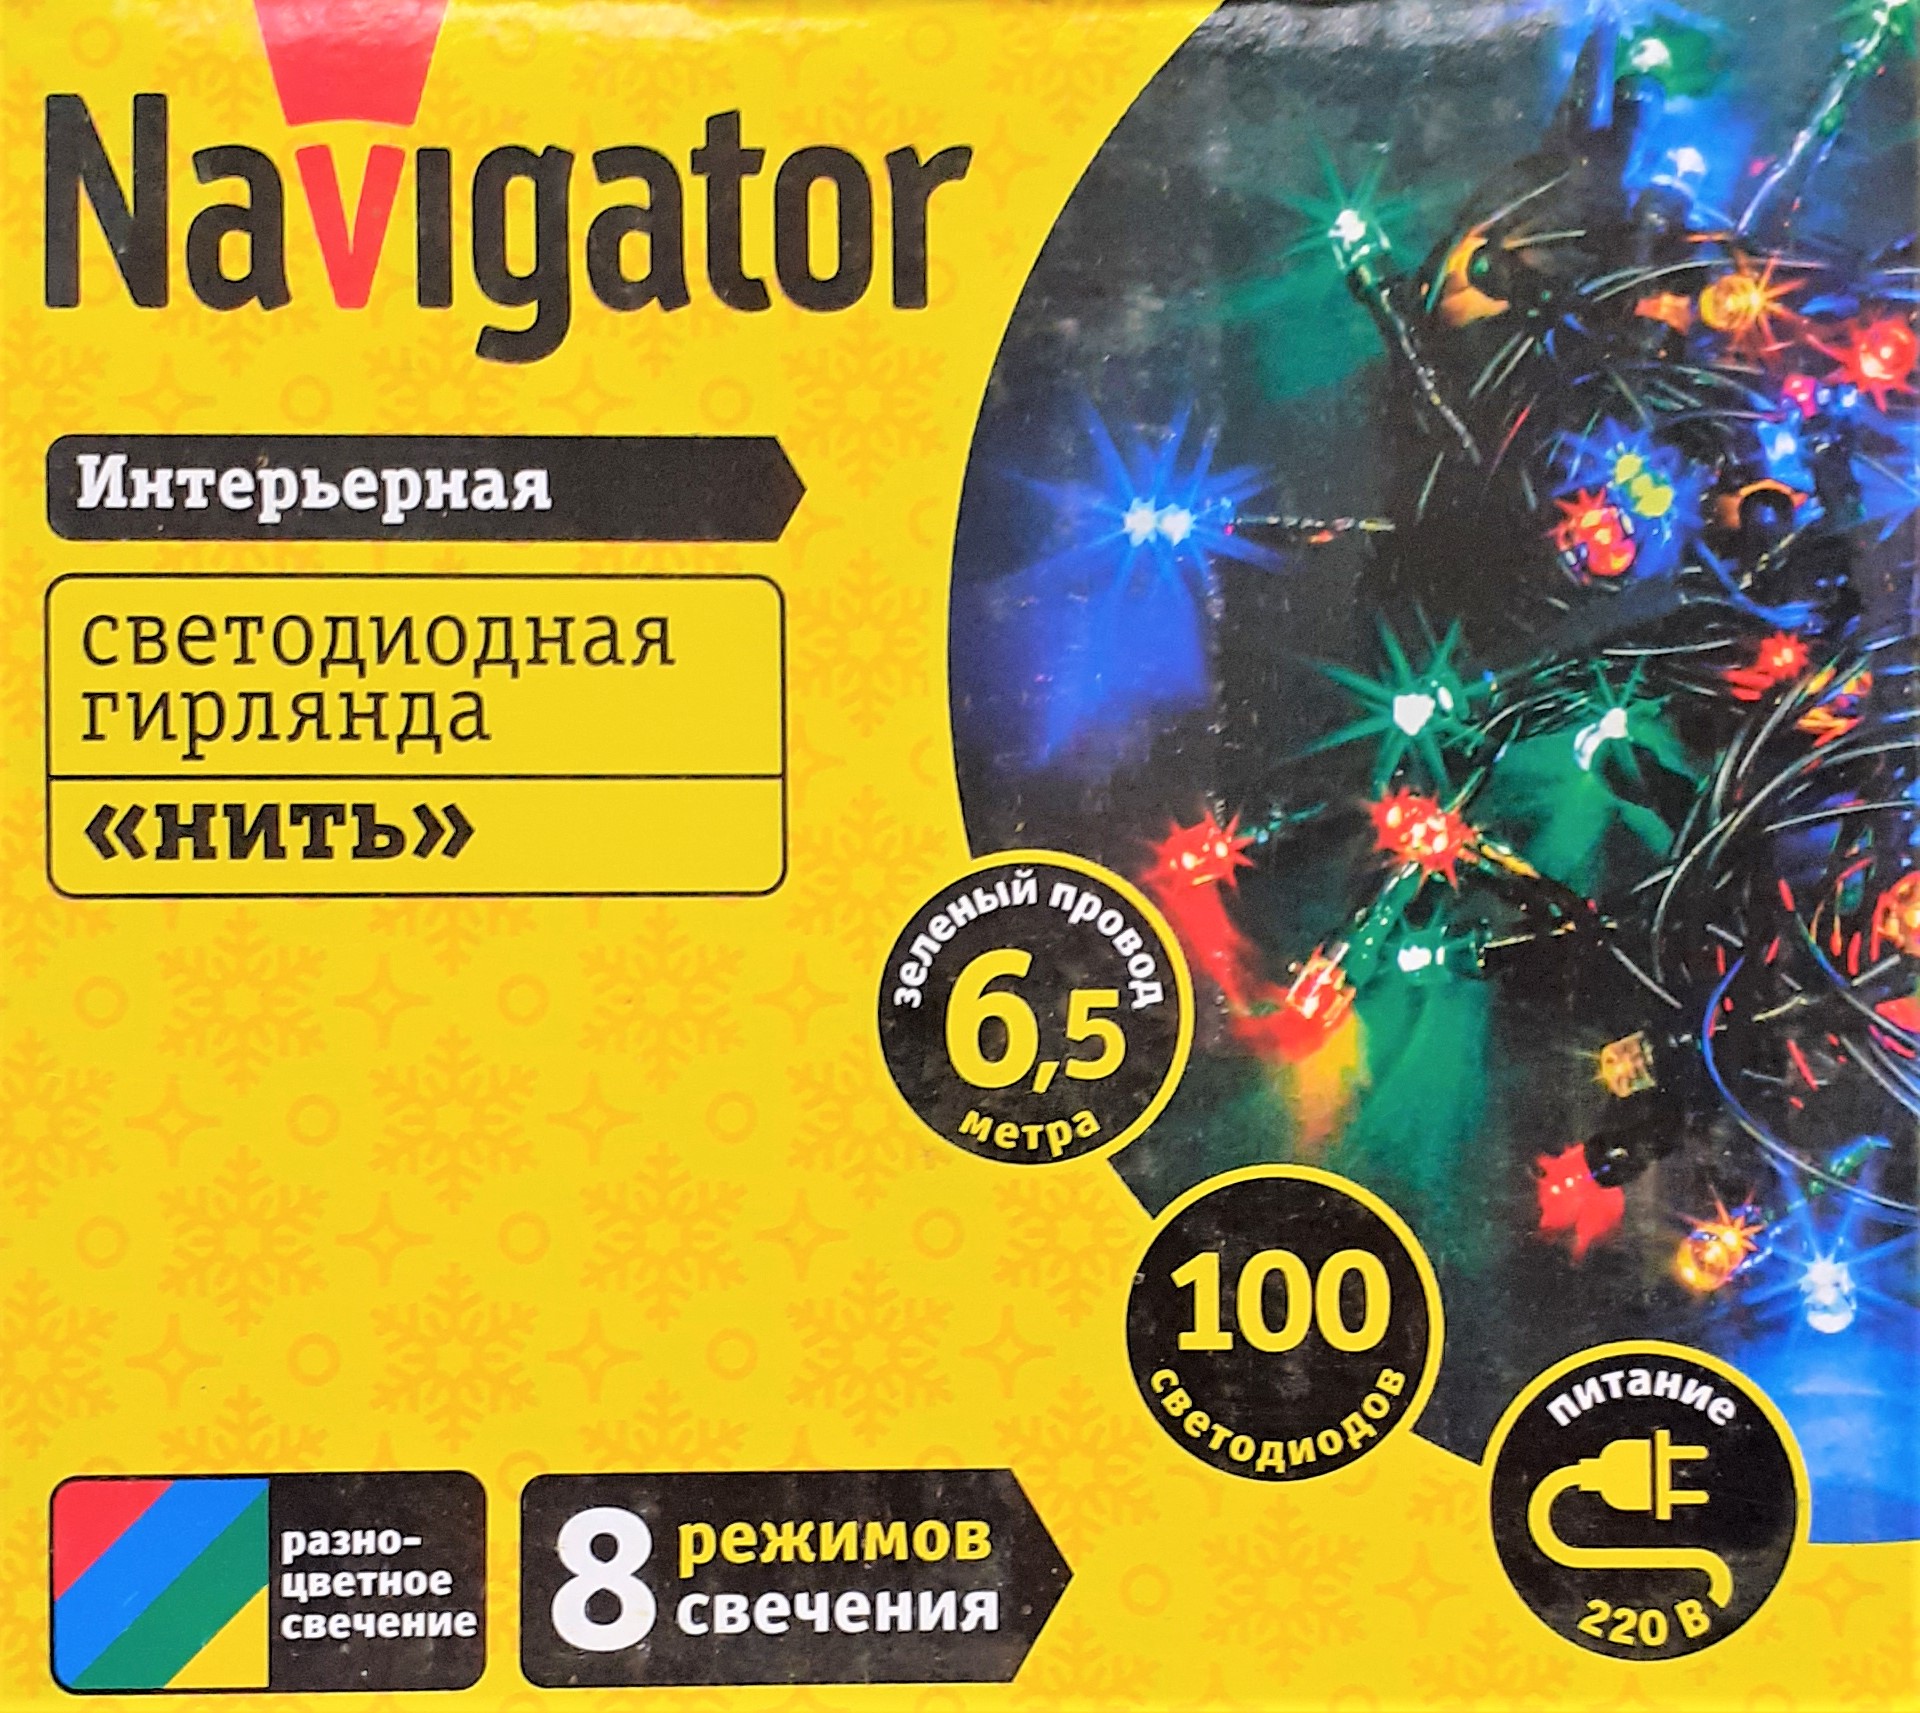 Электрогирлянда интерьерная Navigator светодиодная, разноцветная, 100 ламп, 8 режимов, 6.5 м NGF-S01-100RGBY-5-6.5m-230-C8-G-IP20 61803